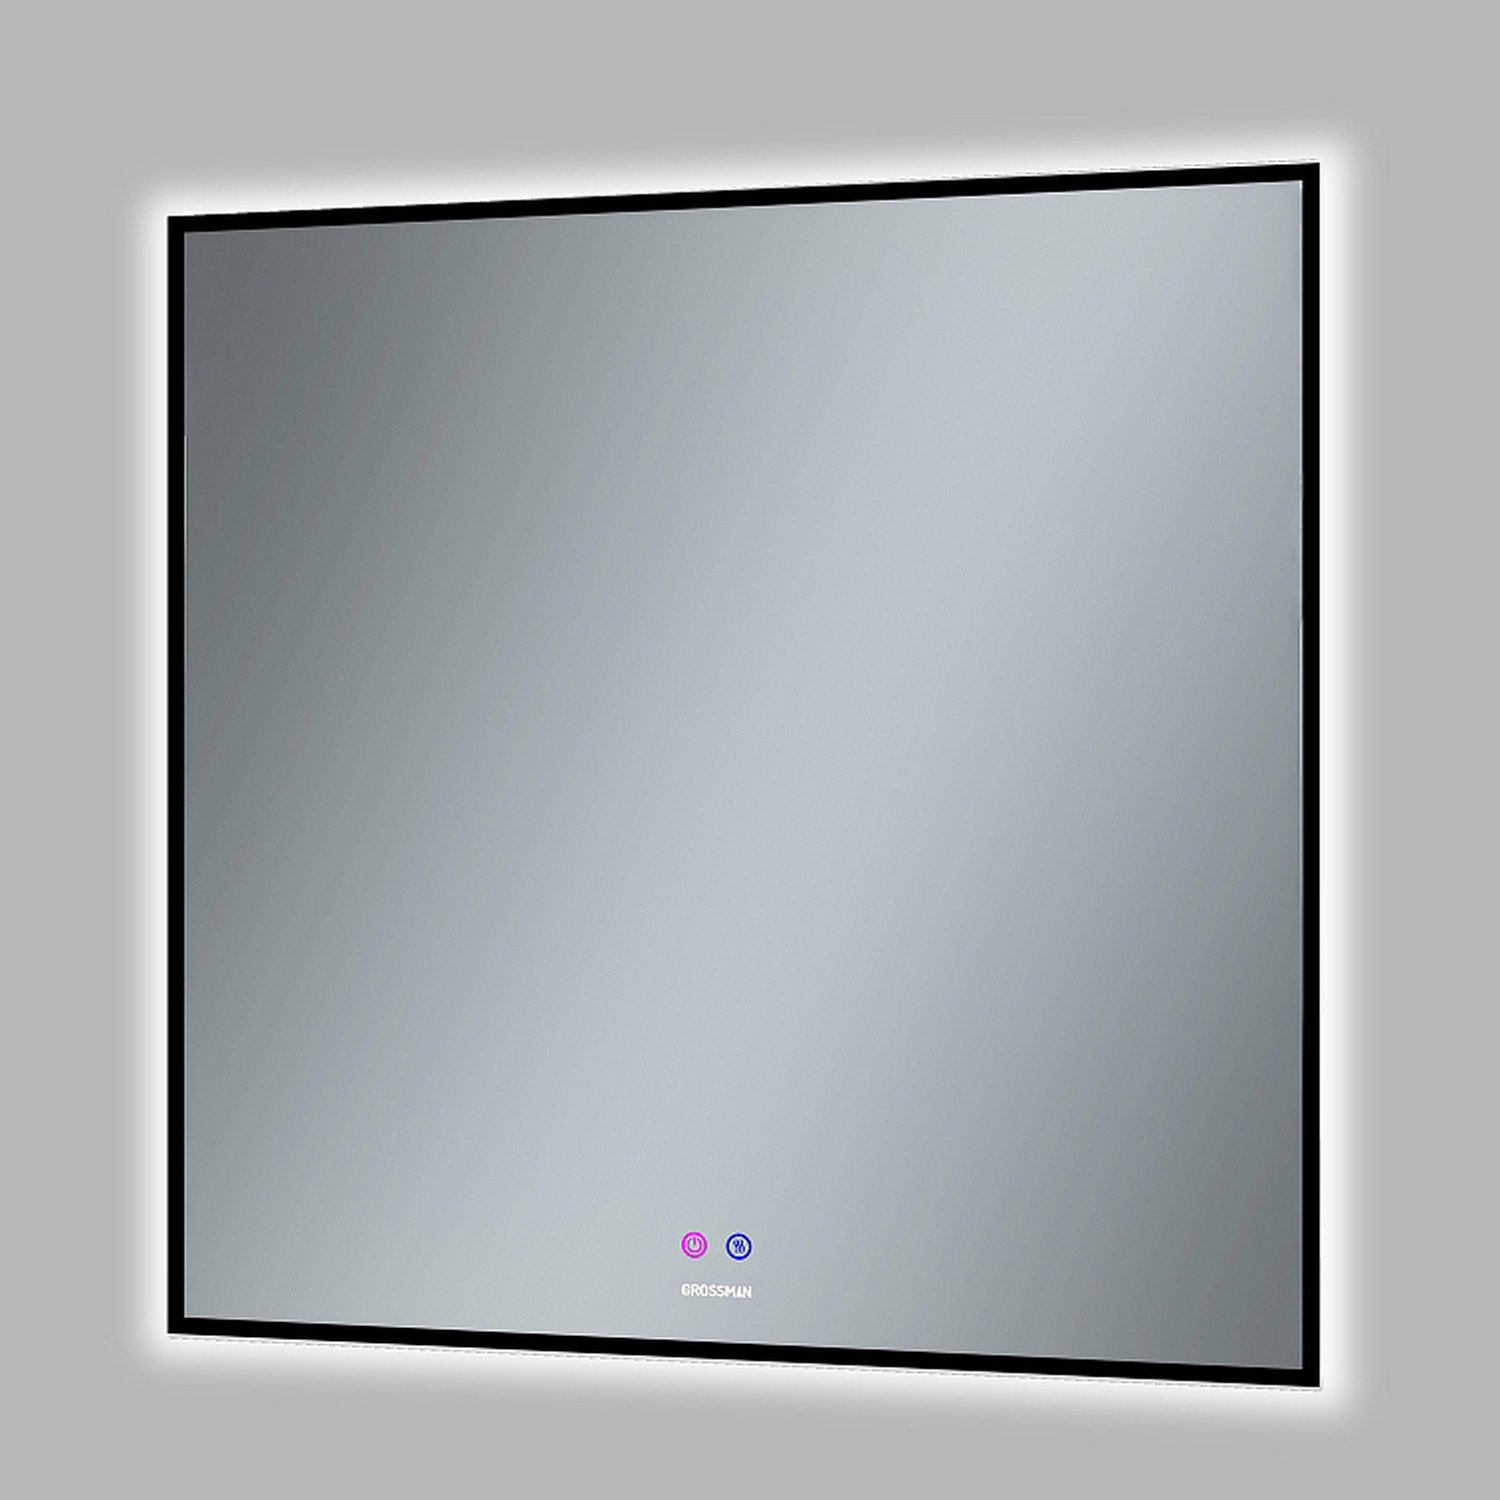 Зеркало Grossman Pragma Norma Black 80x80, с подсветкой, диммером и функцией антизапотевания, цвет черный